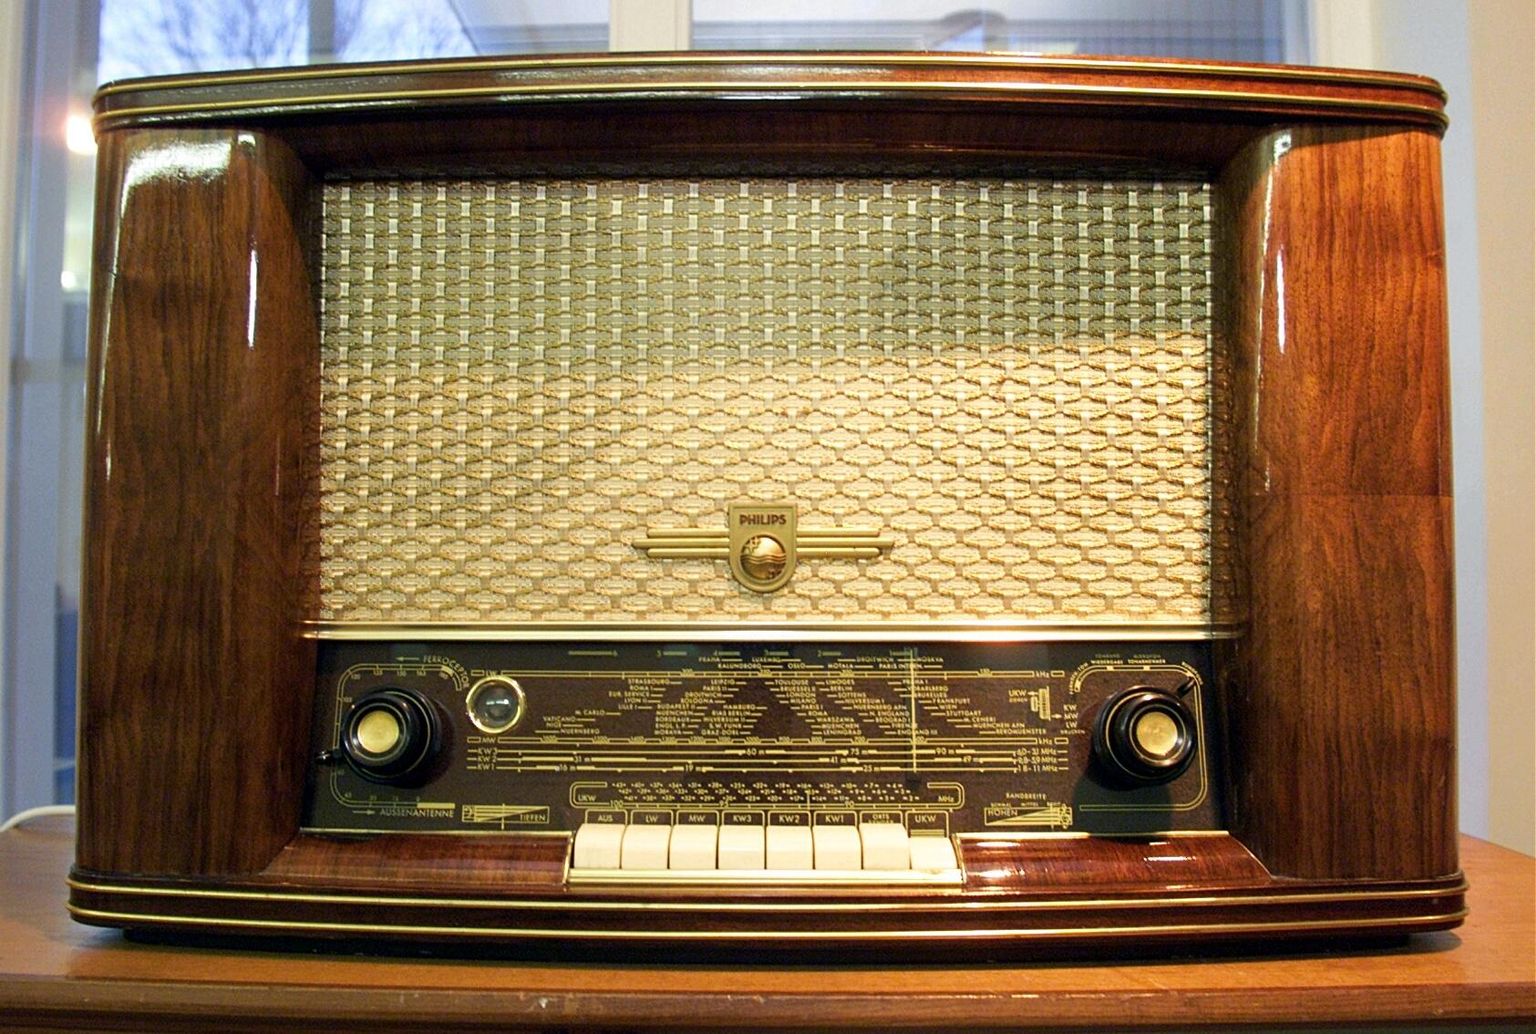 Paul Keresele kingitud raadioaparaat Philips Türil asuvas ringhäälingumuuseumis. Kui see raadio praegu tööle panna, siis spordireportaaže sealt ei kuuleks. FOTO: Lauri Kulpsoo